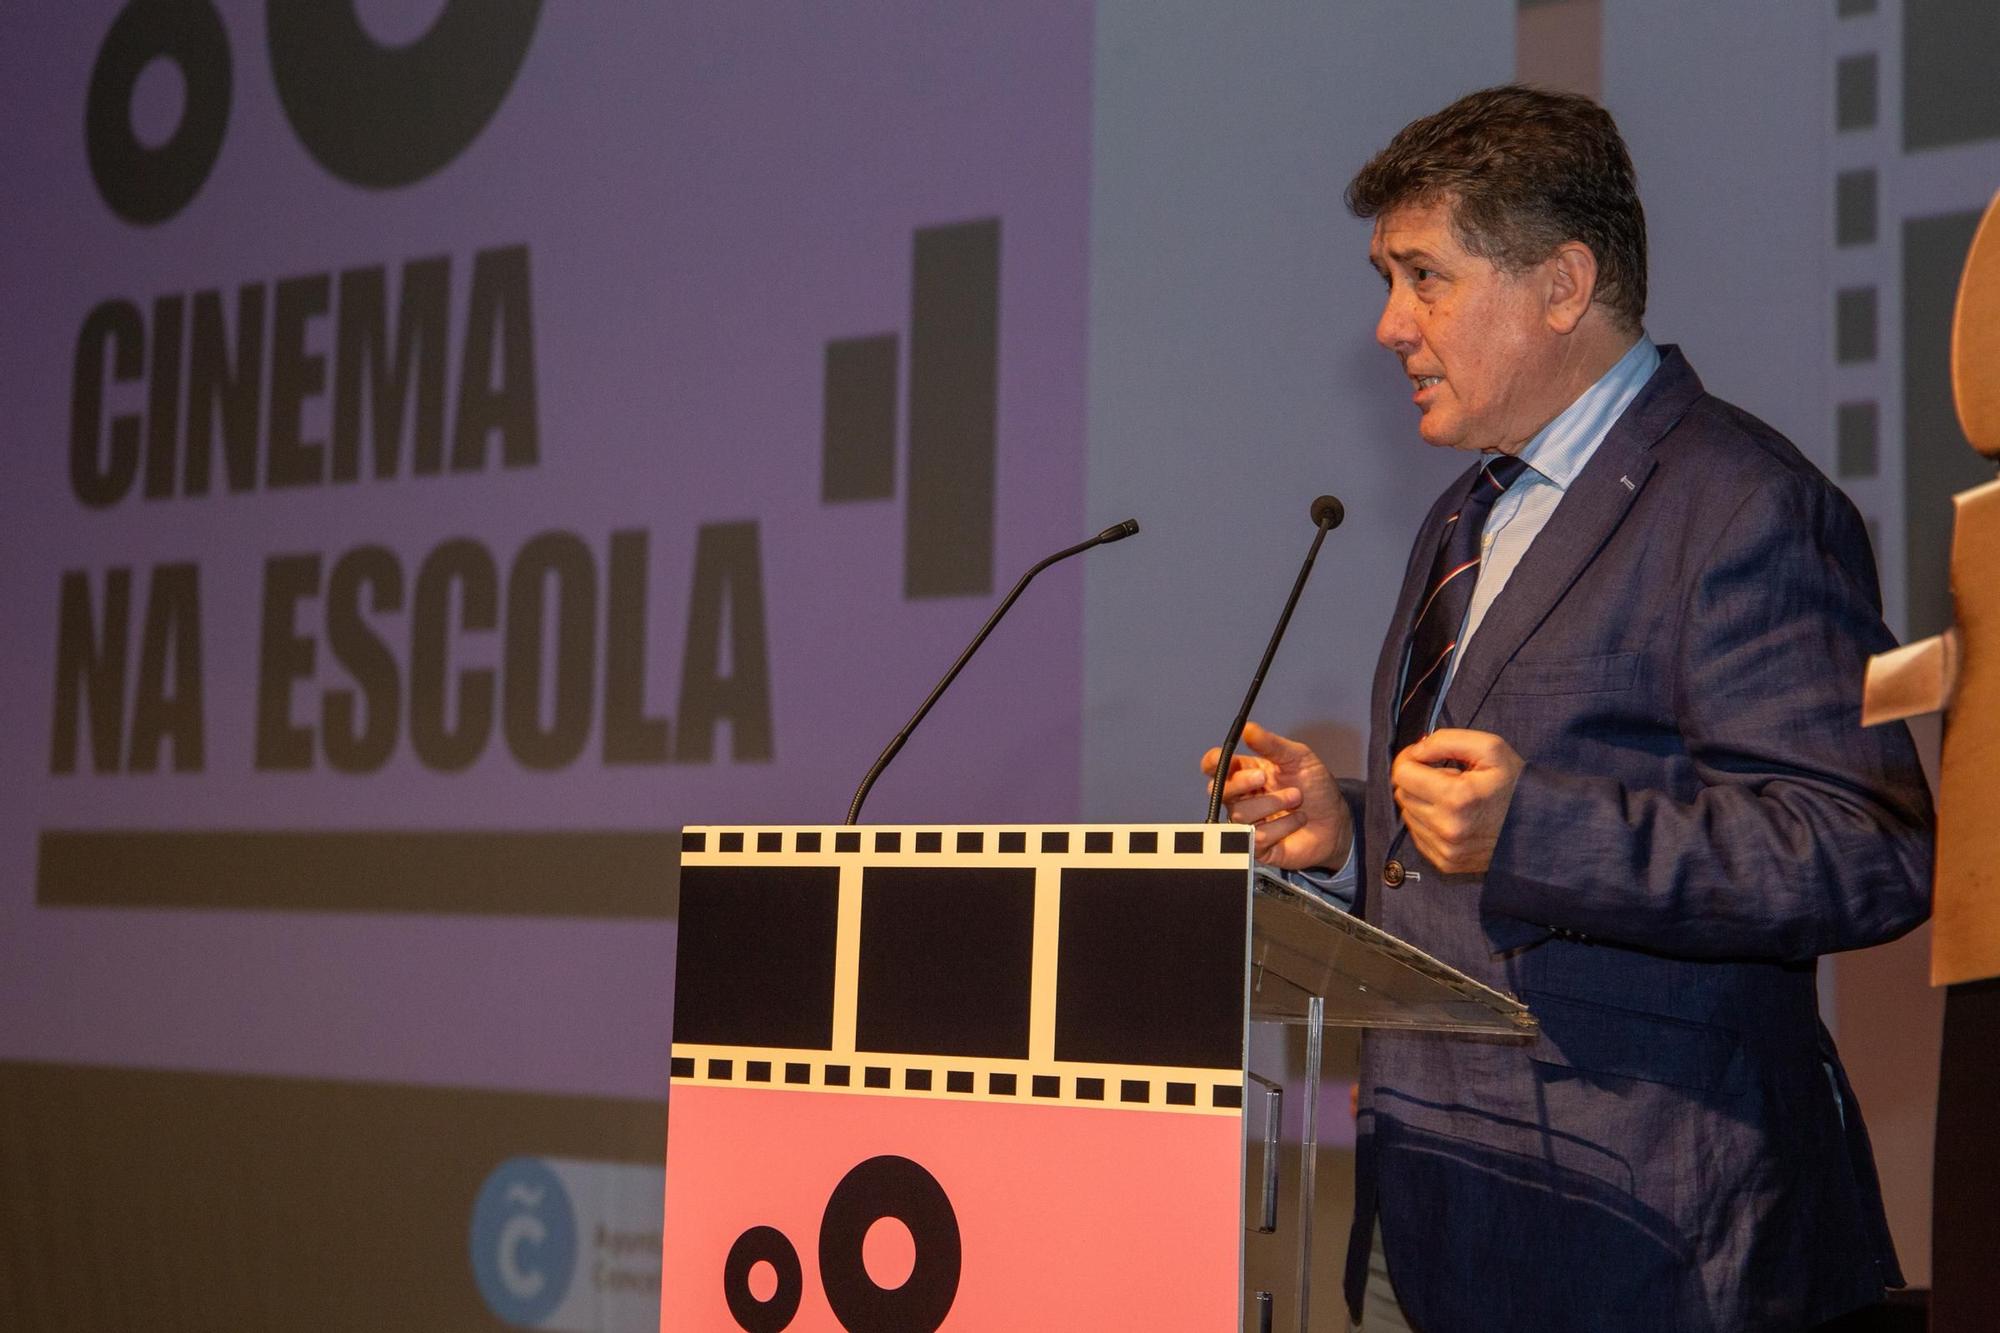 Entrega de los premios Cinema na Escola en A Coruña